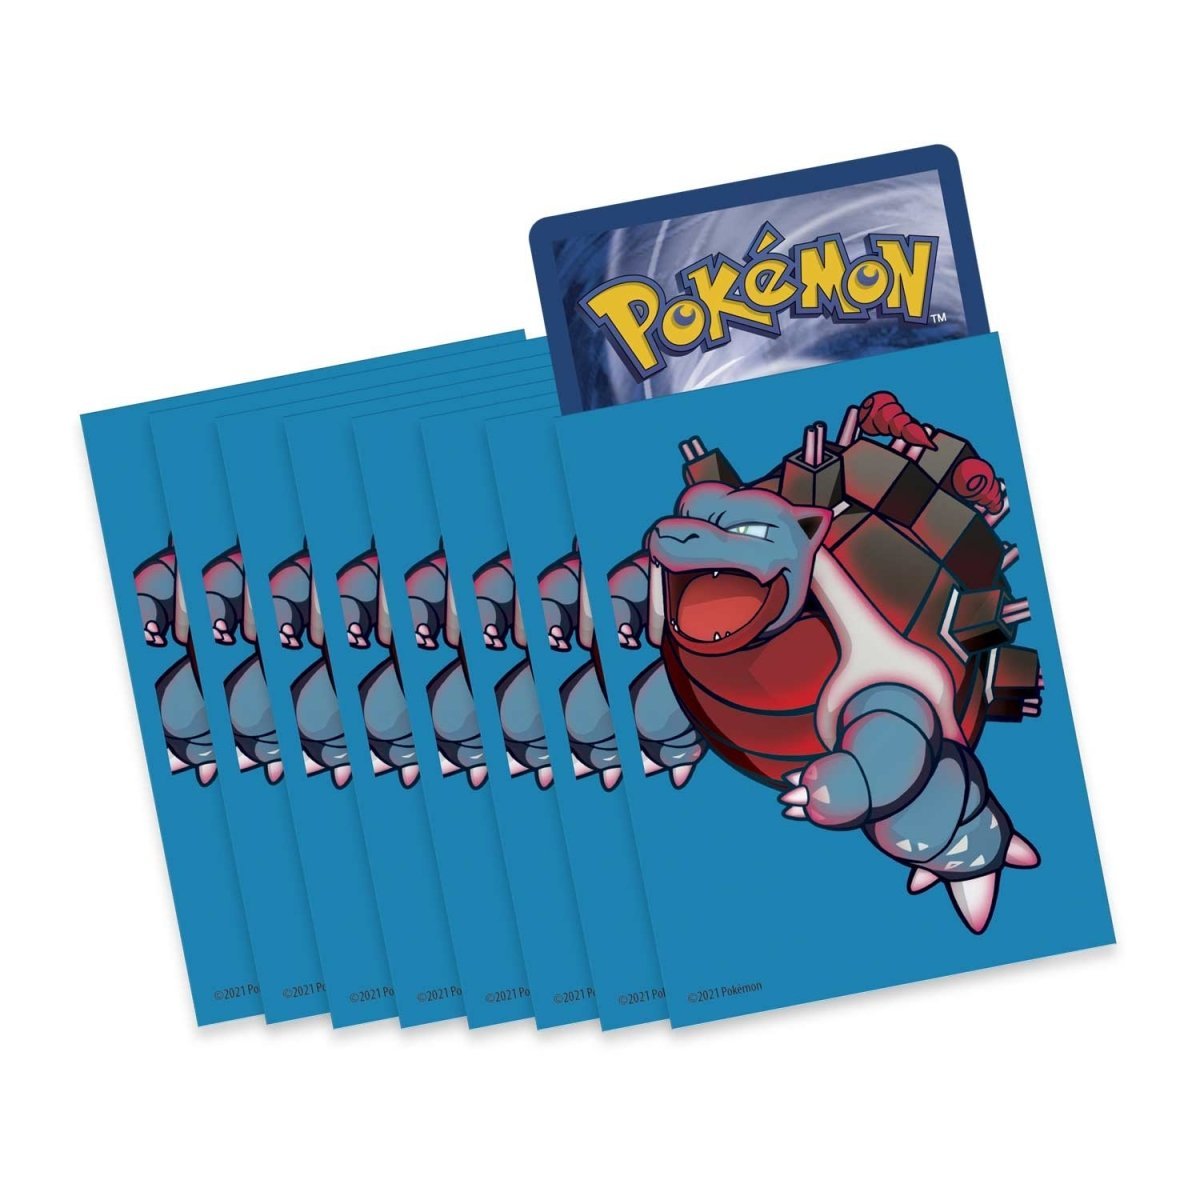 Pokémon TCG: Blastoise VMAX Battle Box - PokeRvmCollection Box